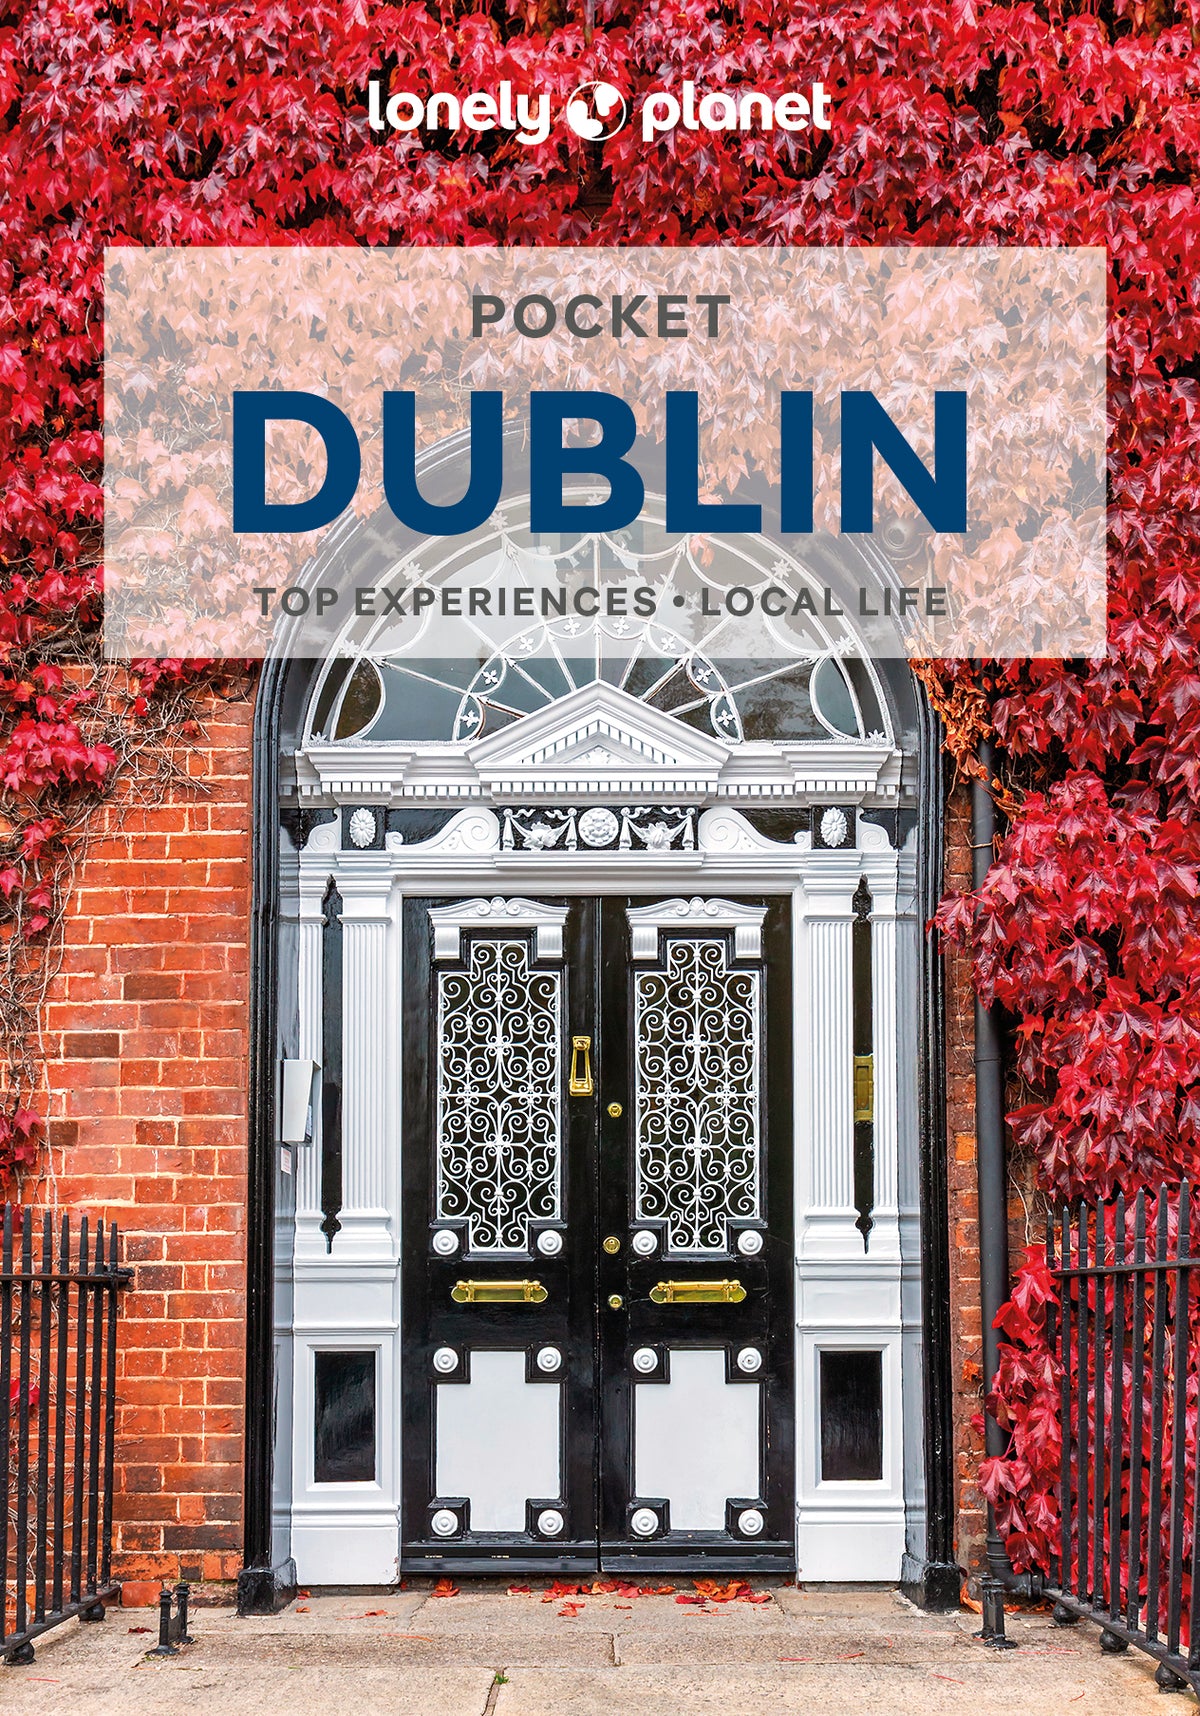 Pocket Dublin Travel Guide